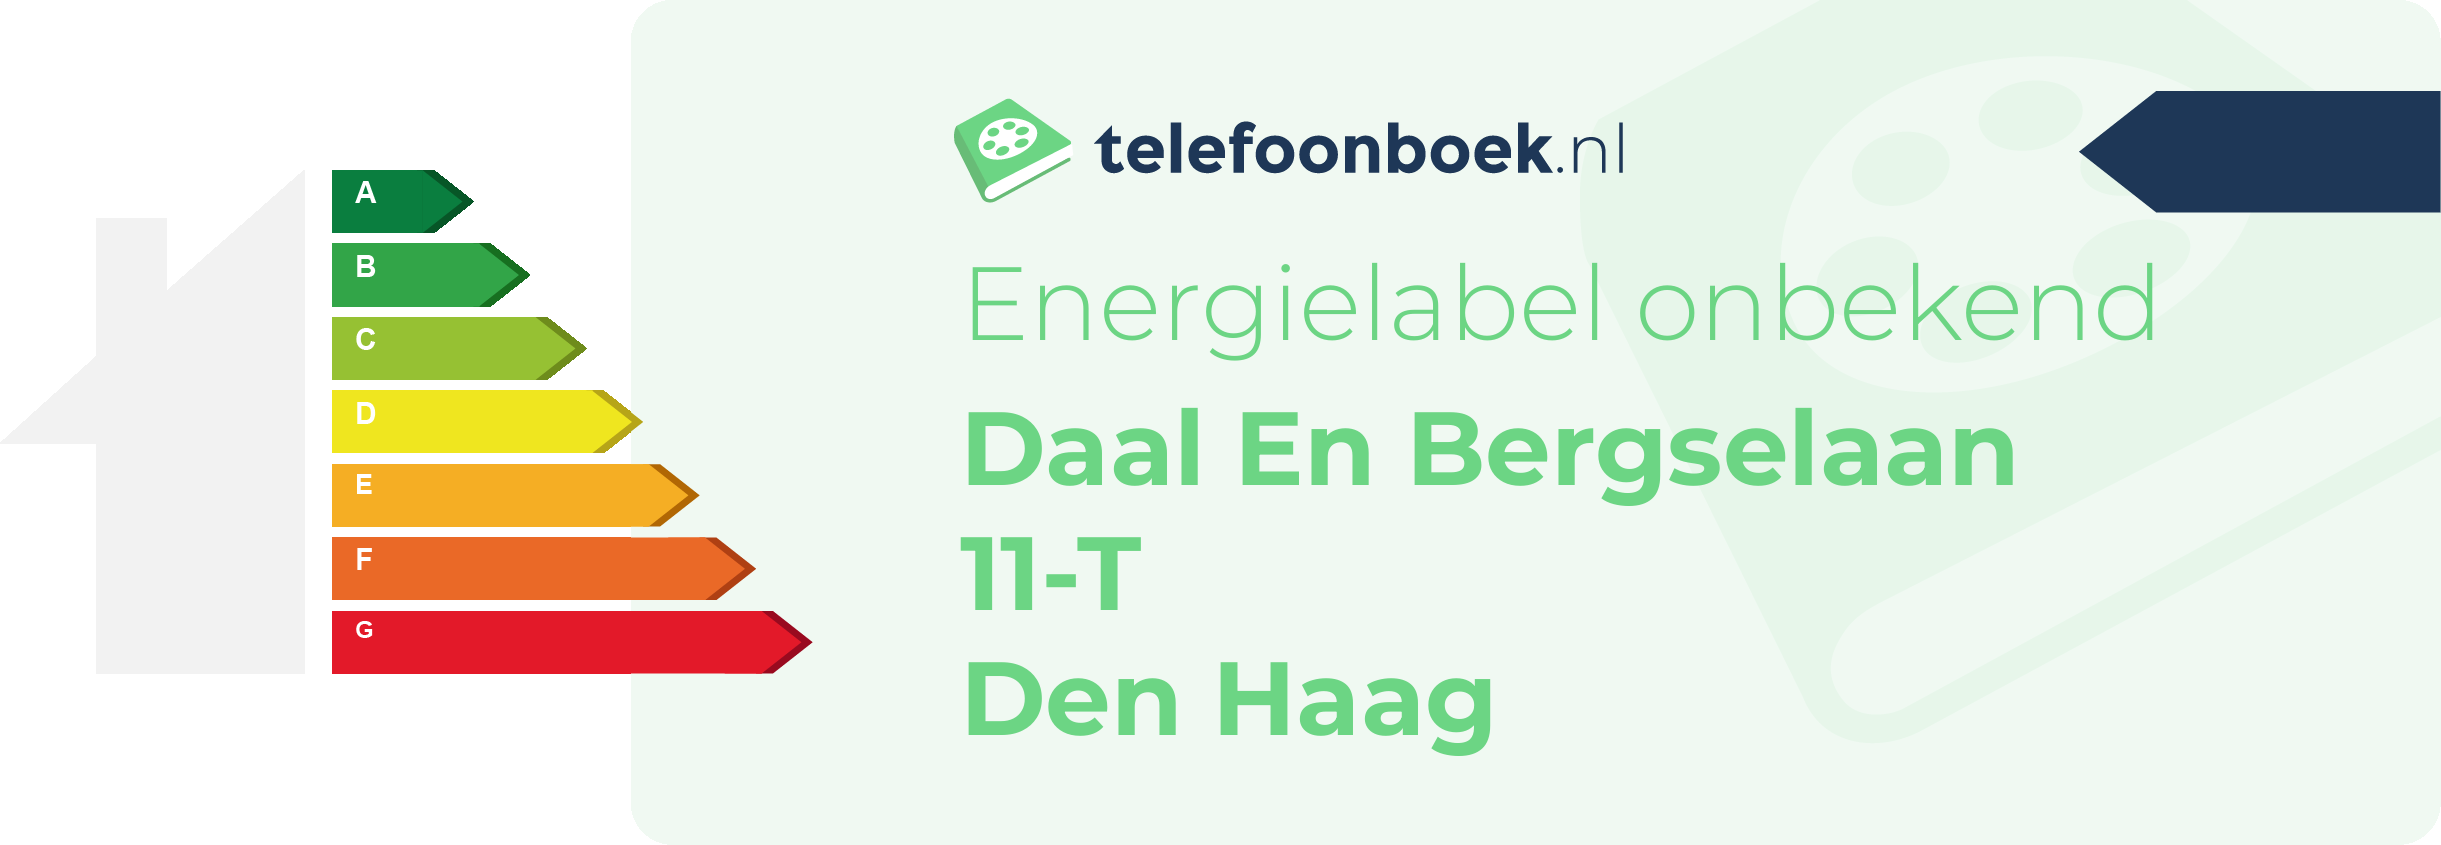 Energielabel Daal En Bergselaan 11-T Den Haag